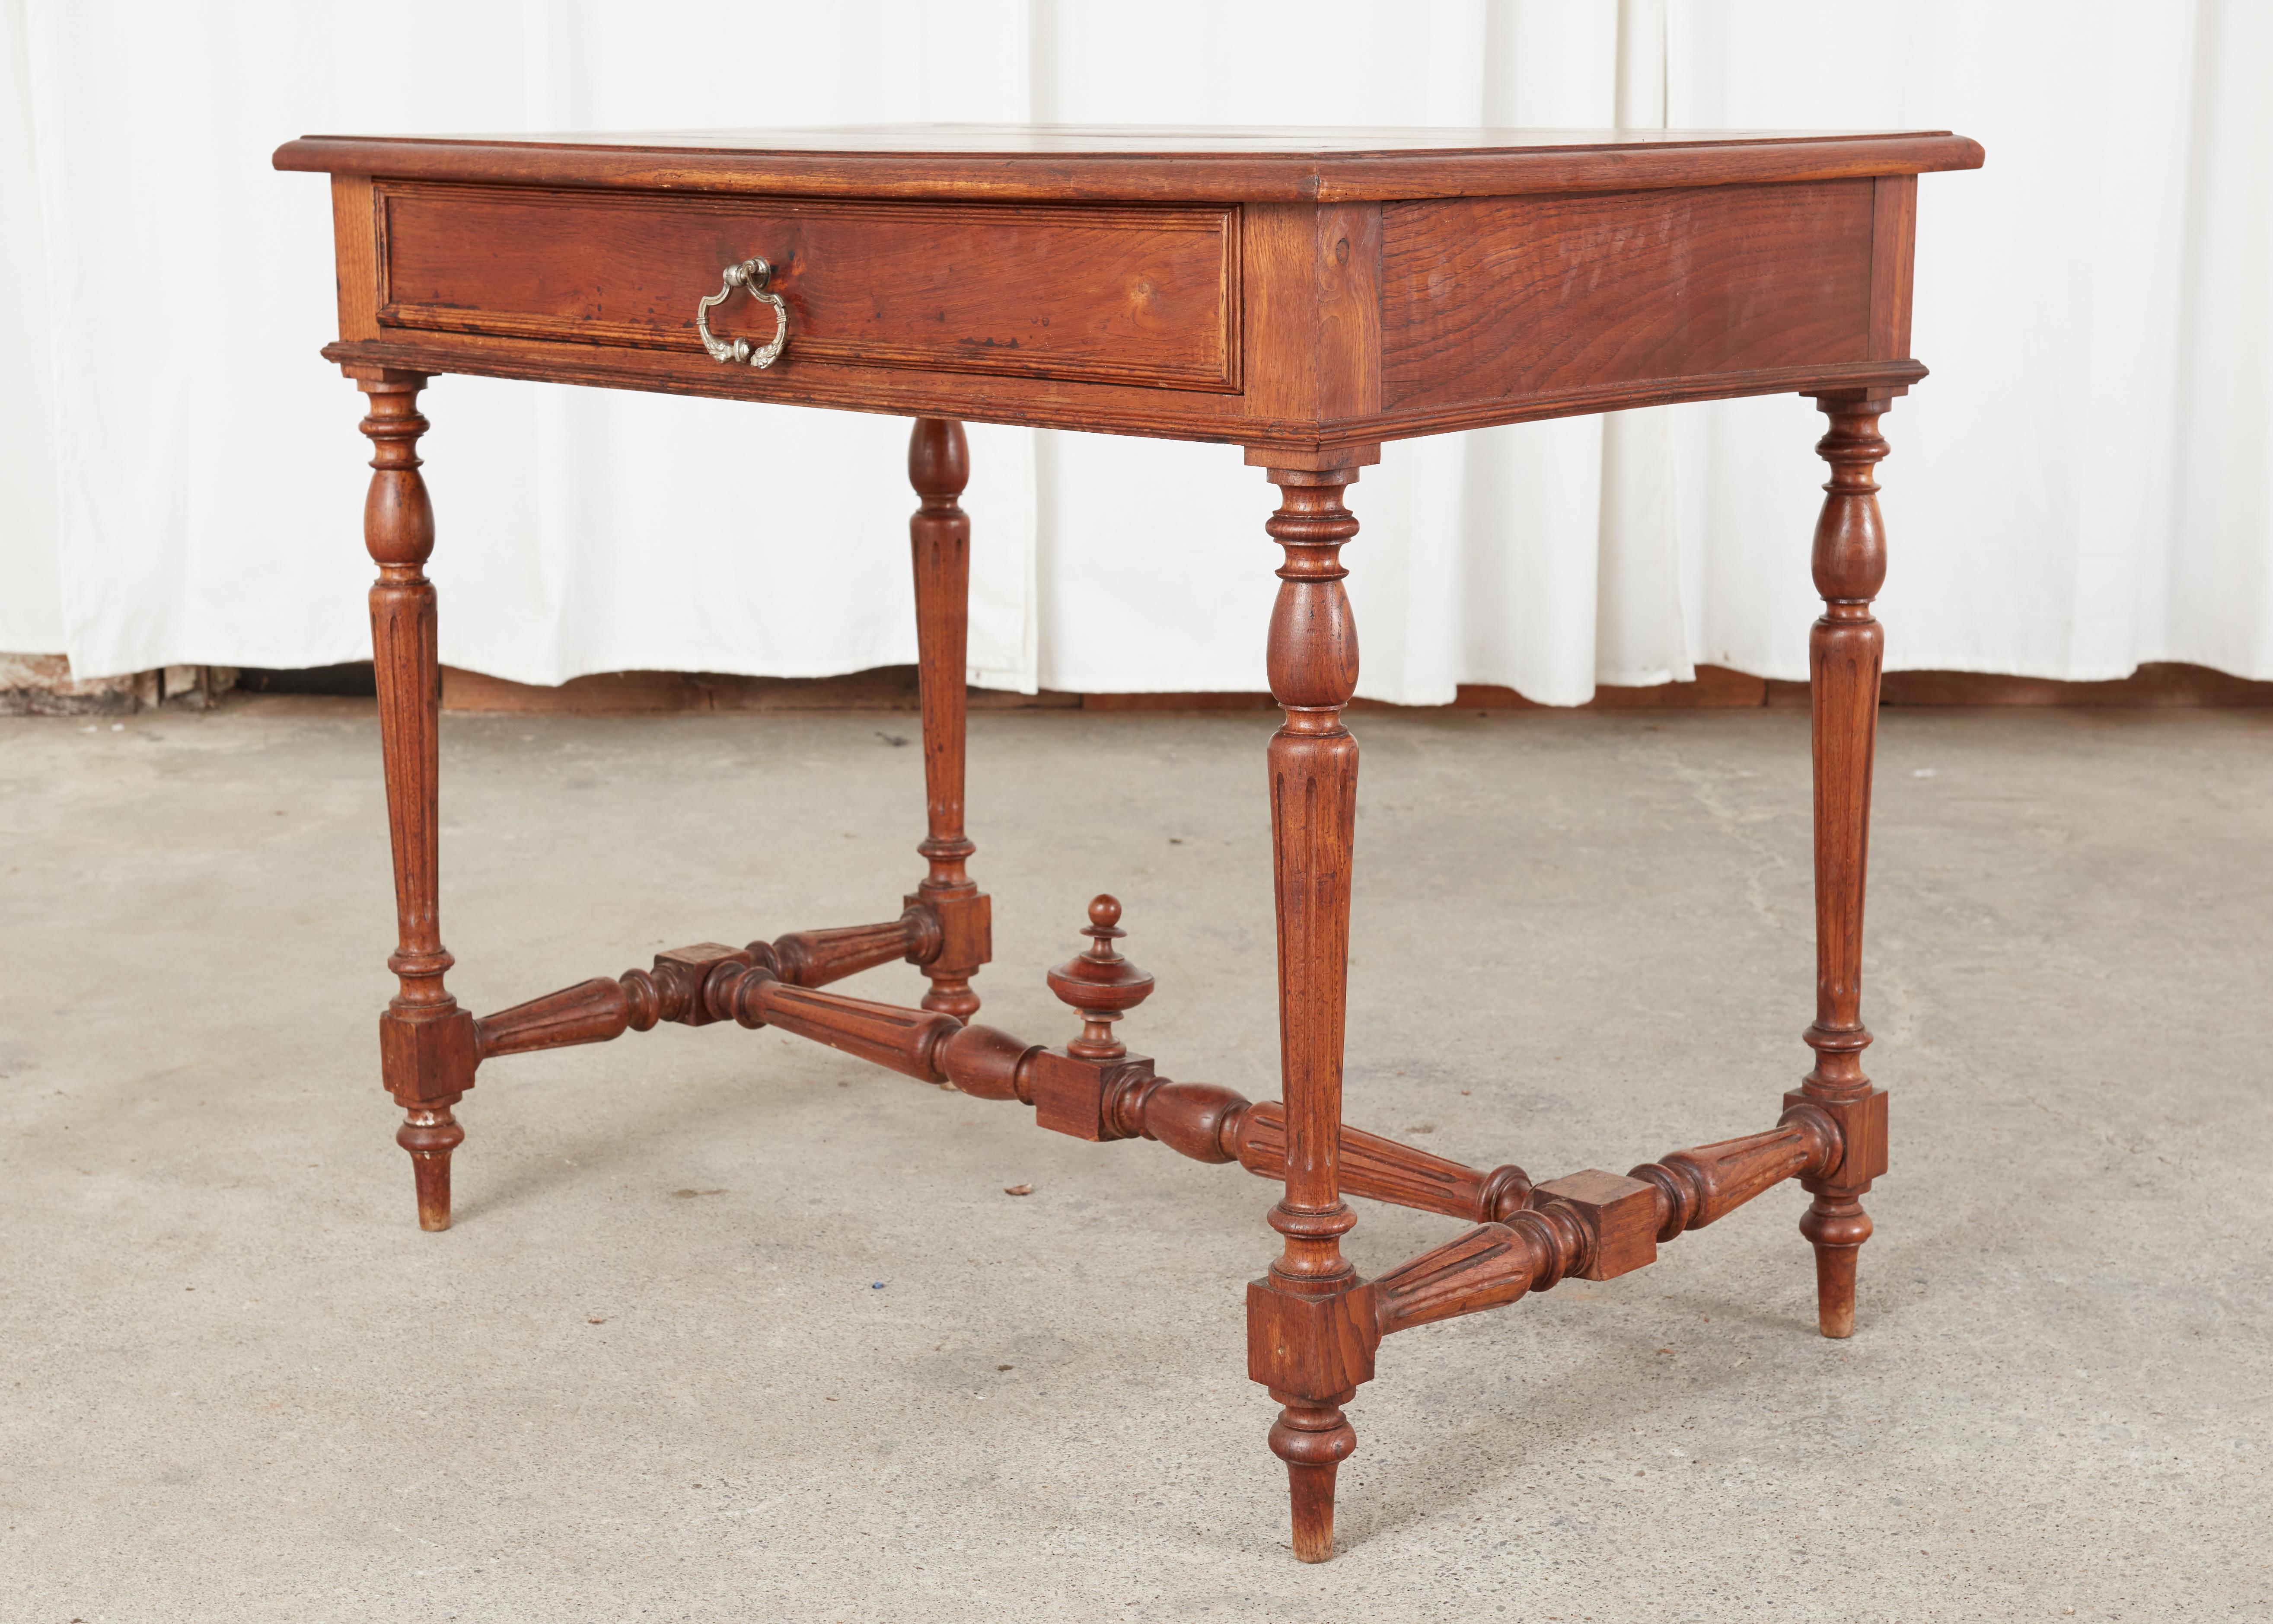 Table d'écriture ou bureau de taille réduite du XIXe siècle. La table est construite en bois fruitier avec une patine chaude et de jolis motifs de grain de bois. Le meuble est doté d'un seul tiroir de rangement à l'avant et est soutenu par